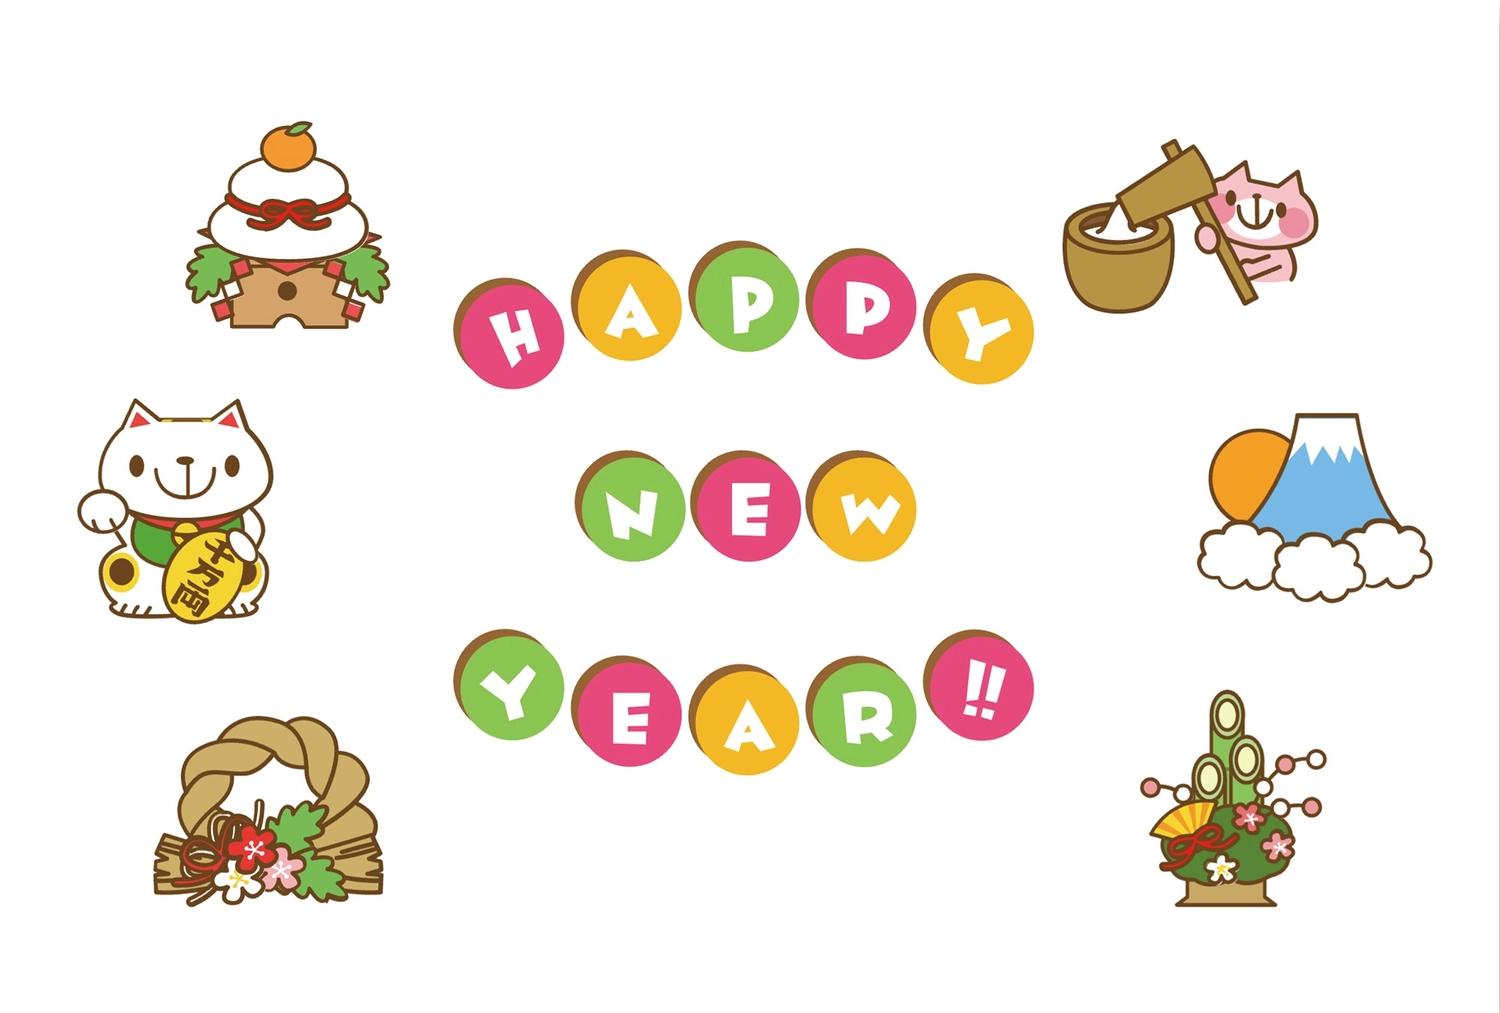 ポップな猫の年賀状, 소나무 장식, 여백, 새해 복 많이 받으세요, 새해 카드 템플릿